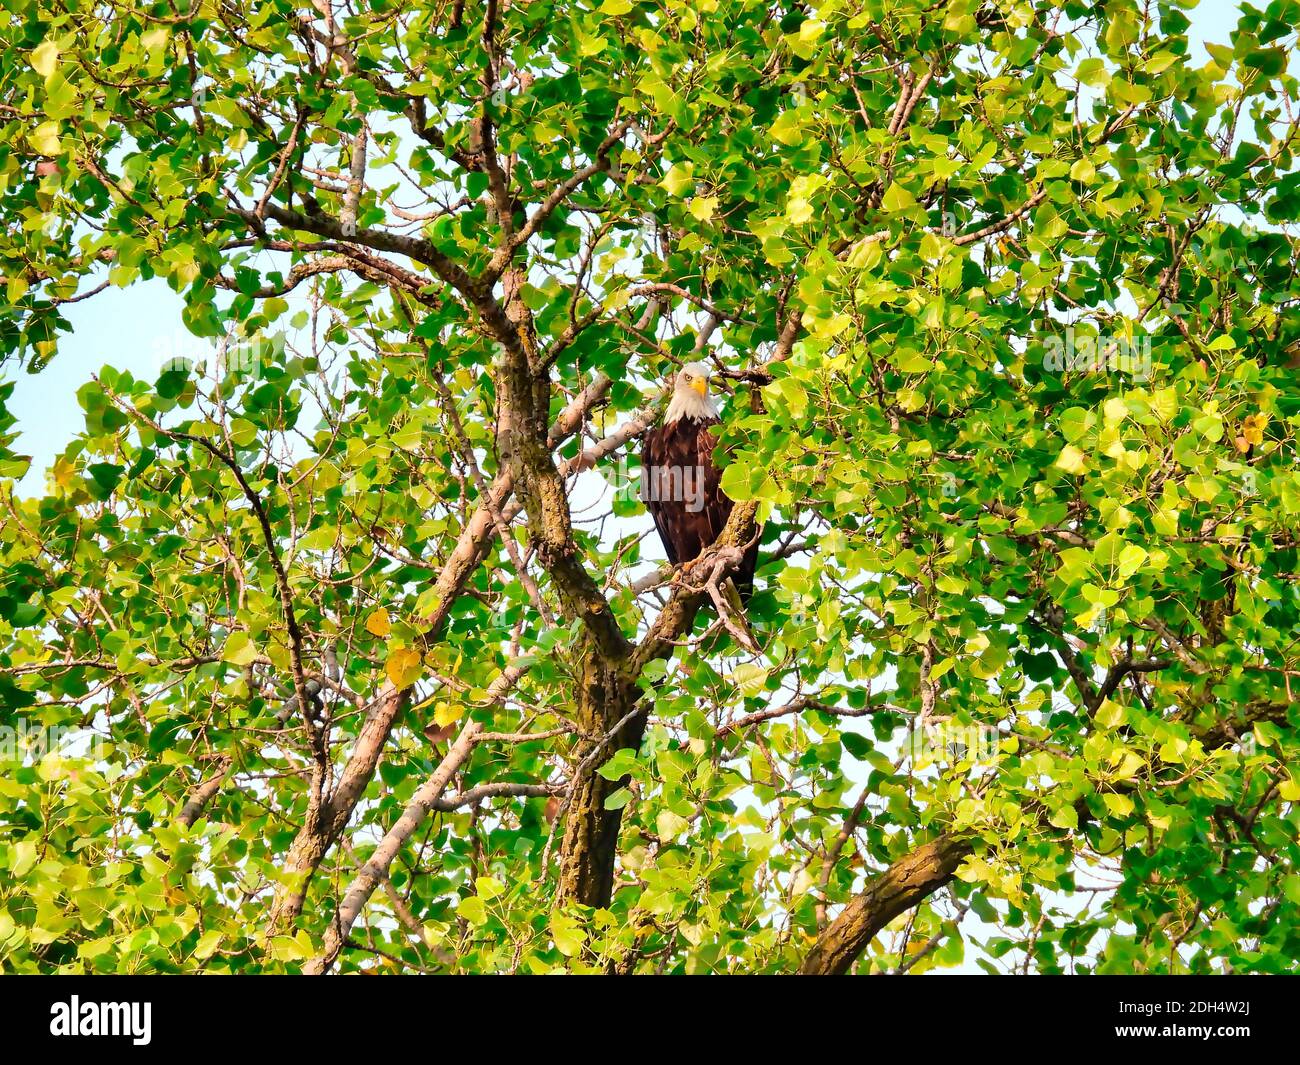 Weißkopfseeadler Greifvogel Raptor hoch im Baum An einem Sommertag versteckt sich in den grünen Blättern als Ein Raubvogel auf der Jagd nach Beute Stockfoto